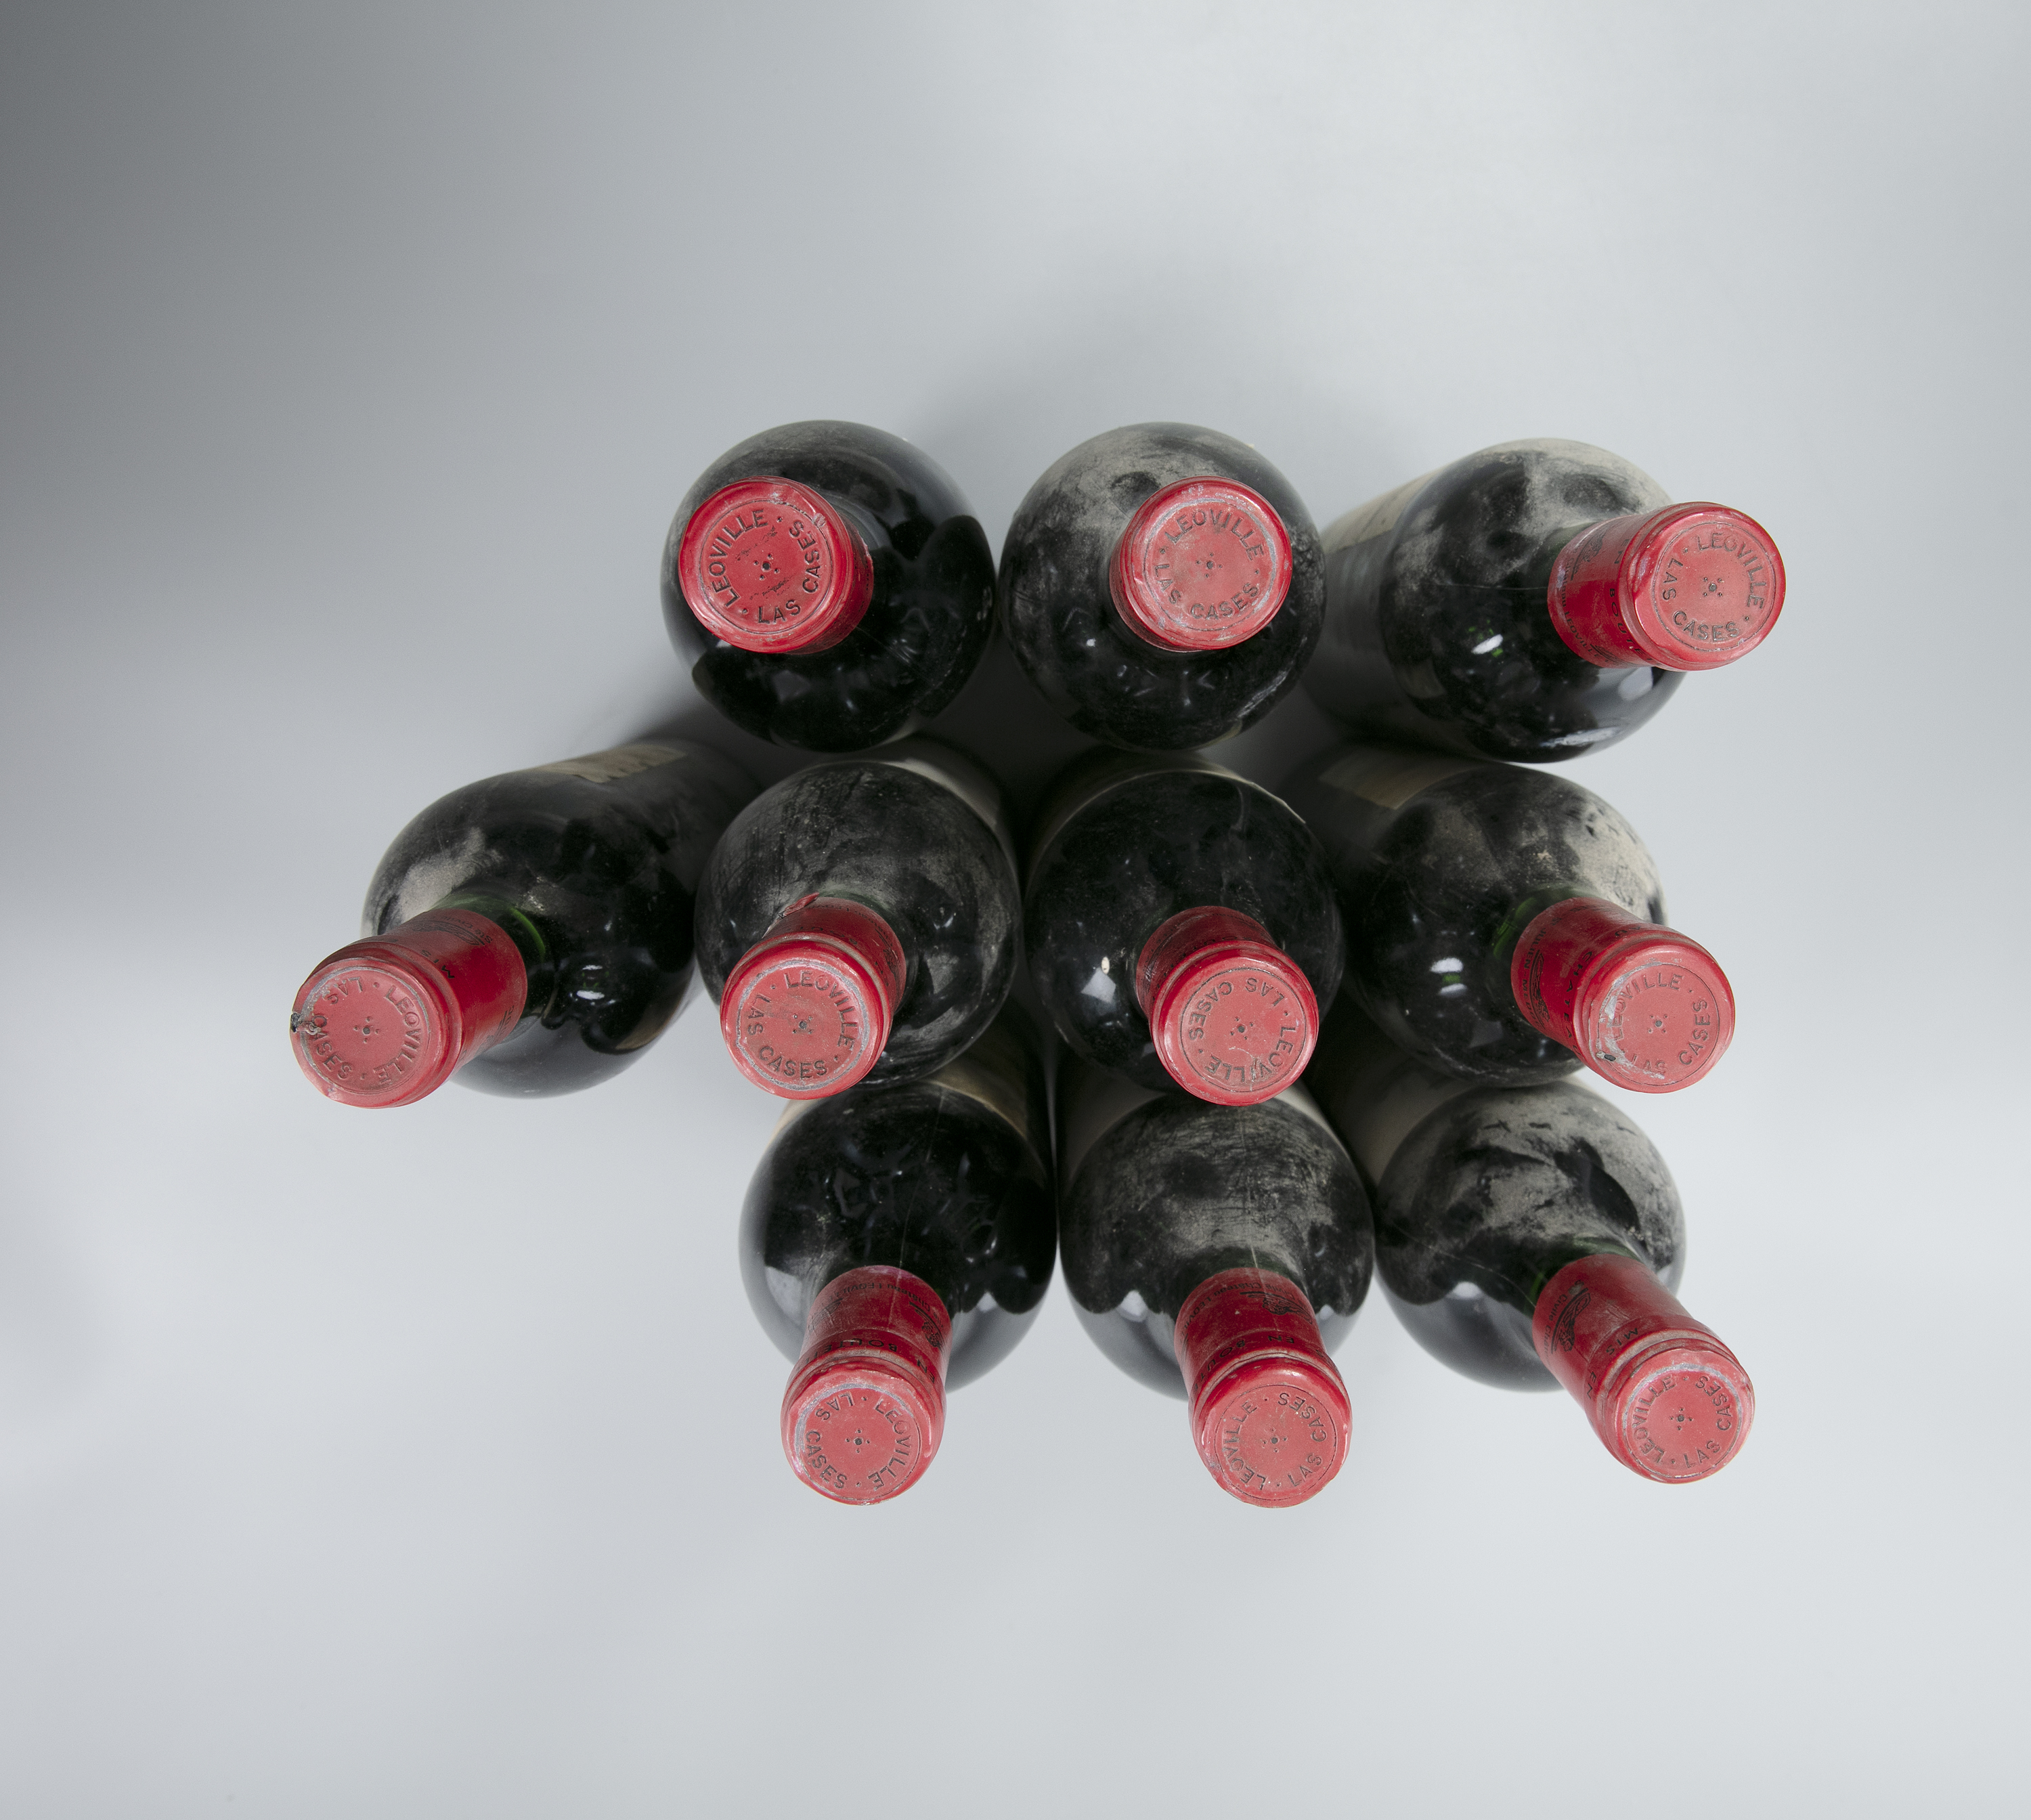 CHATEAU LEOVILLE LAS CASES Saint Julien, 1982 10 bottles - Image 8 of 8